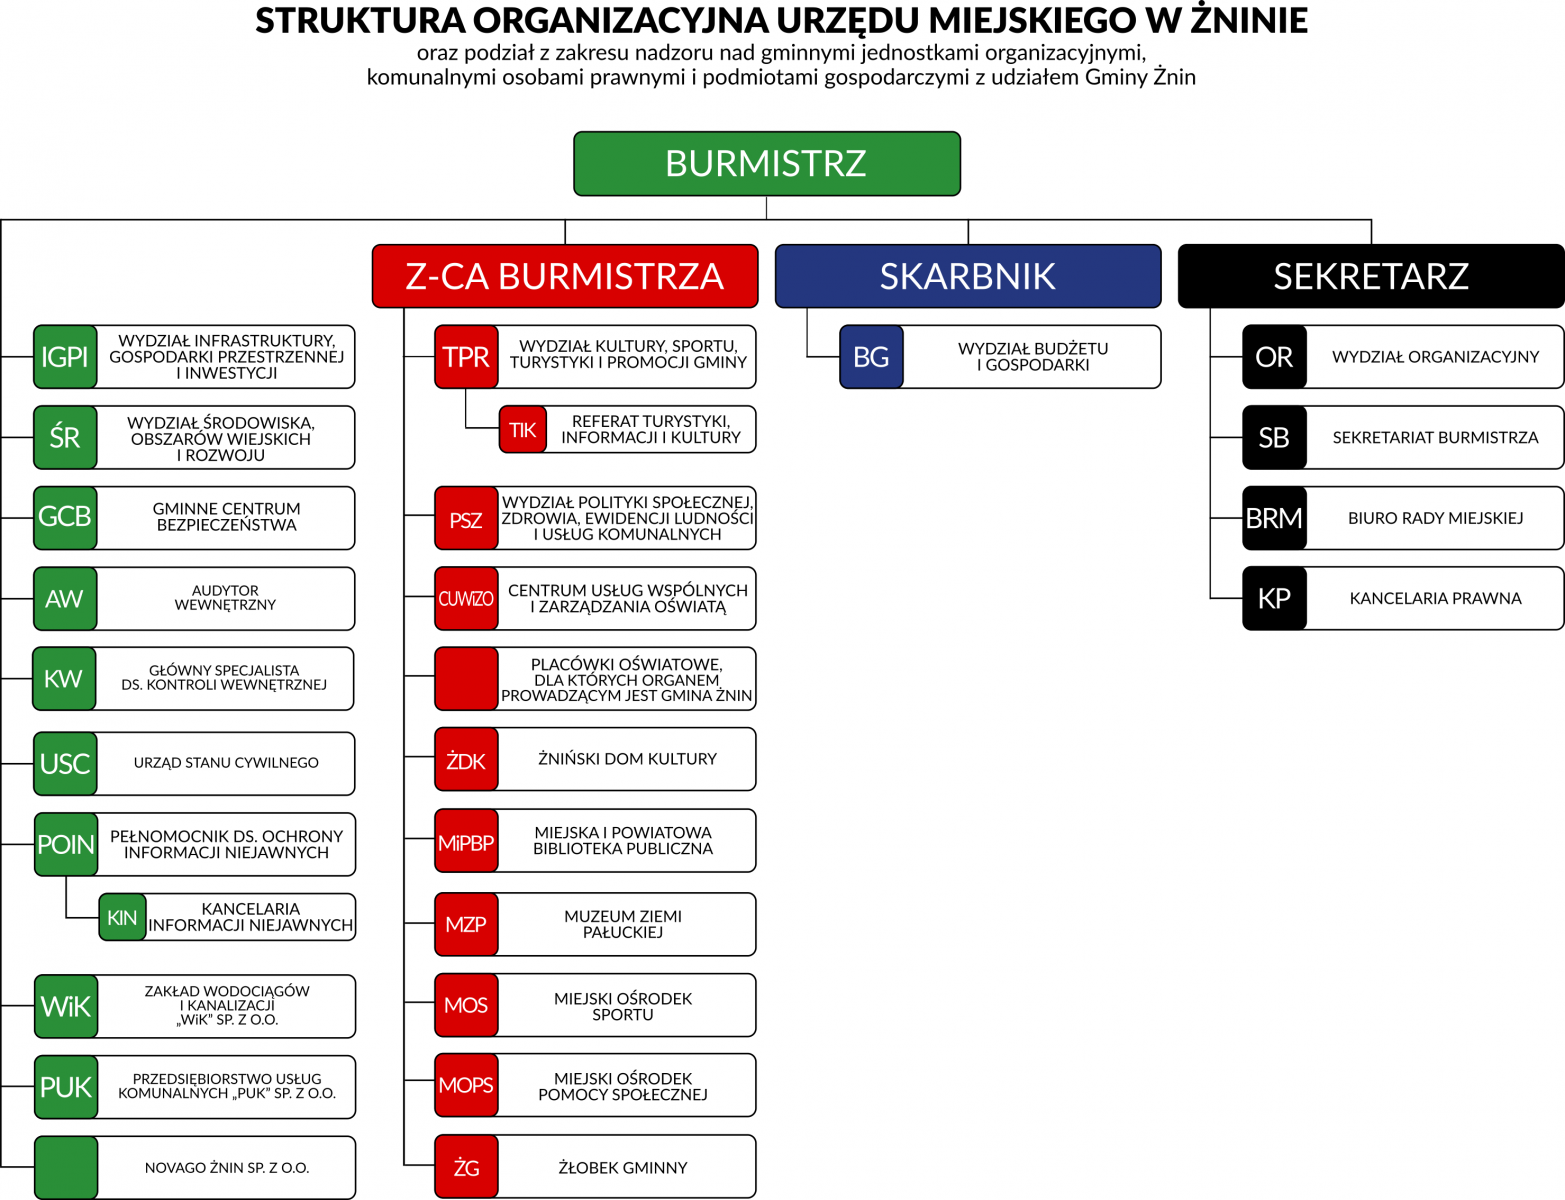 Struktura organizacyjna Urzędu Miejskiego w Żninie oraz podział z zakresu nadzoru nad gminnymi jednostkami organizacyjnymi, komunalnymi osobami prawnymi i podmiotami gospodarczymi z udziałem Gminy Żnin.